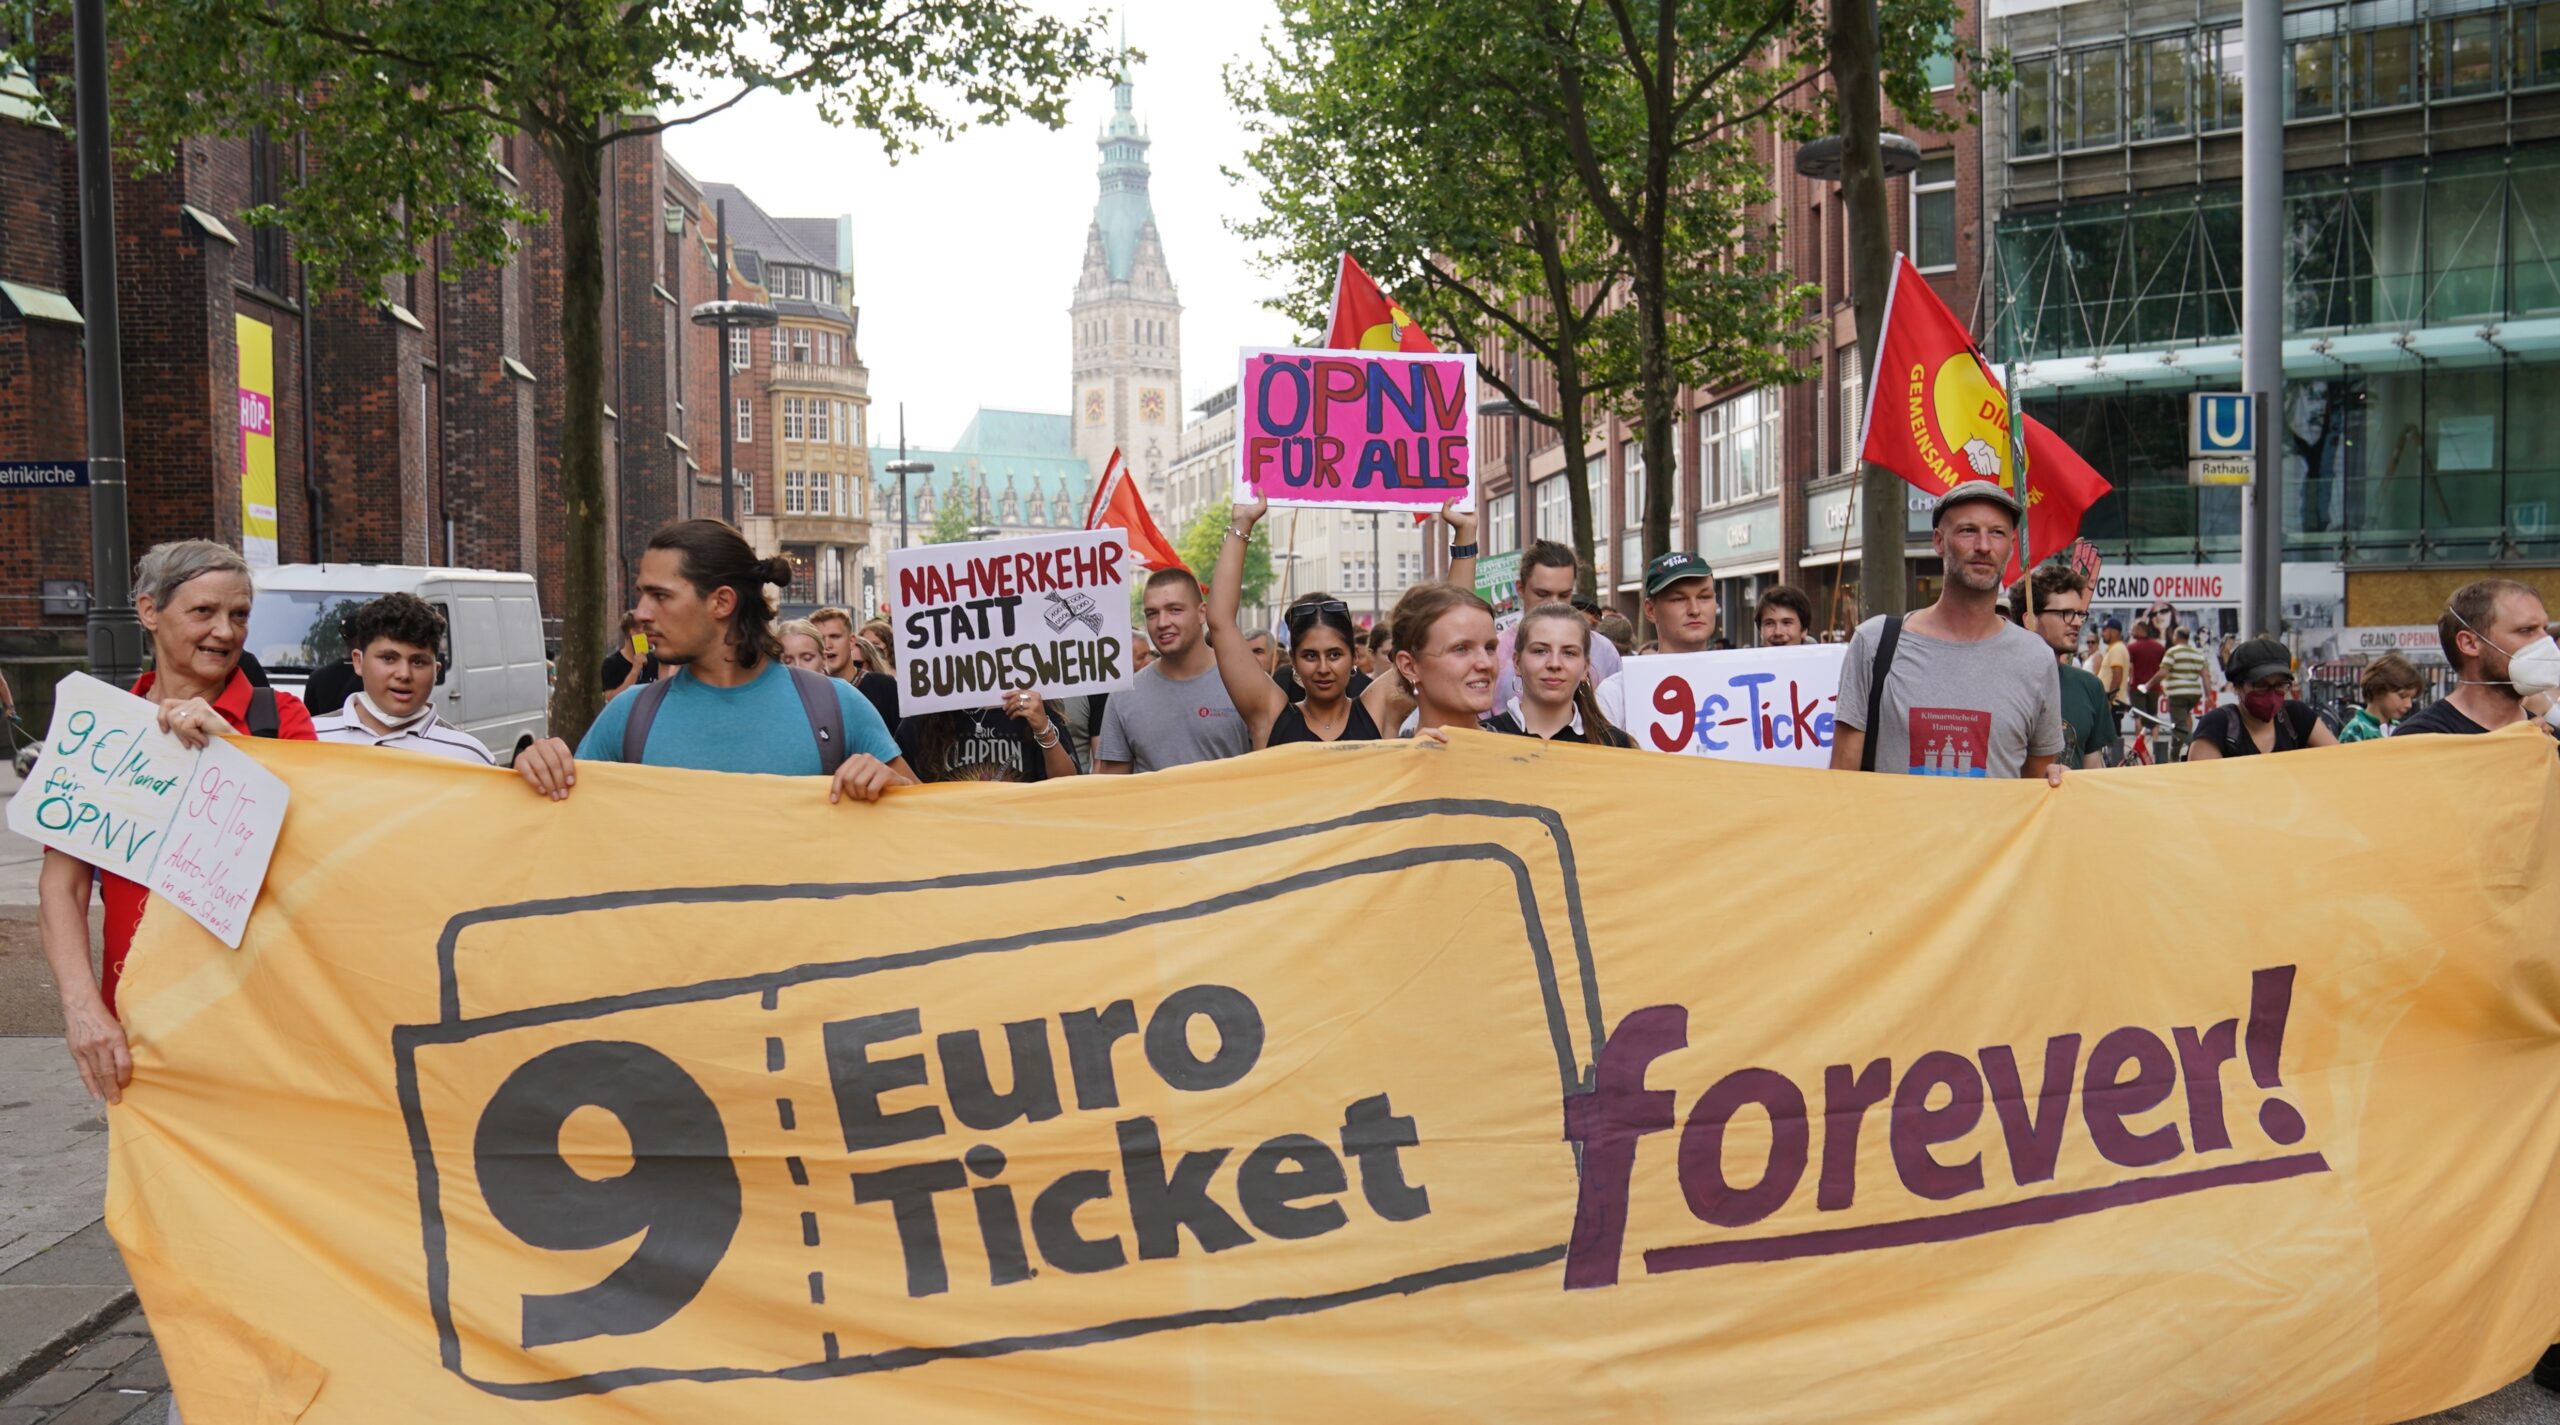 Teilnehmer einer Demonstration des Bündnisses „9-Euro-Ticket-forever!“ gehen durch die Innenstadt.